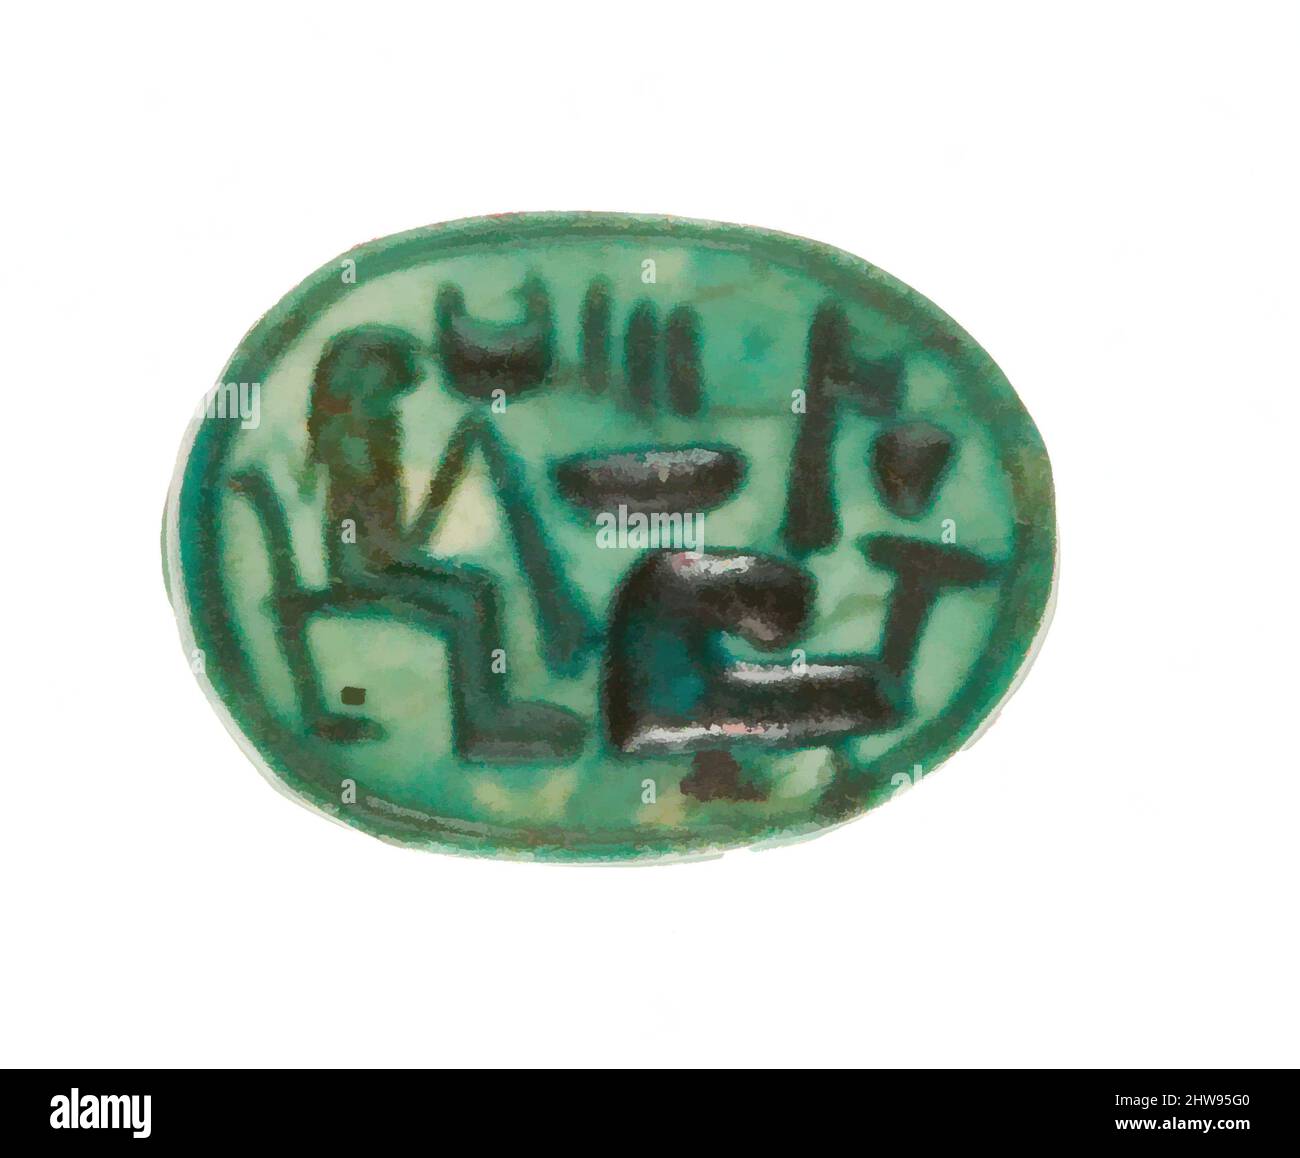 Art inspiré par Scarab inscrit pour la femme de Dieu Hatshepsut, Living, Nouveau Royaume, dynastie 18, début, env. 1479–1458 av. J.-C., d'Égypte, haute-Égypte, Thèbes, Deir el-Bahri, Temple de Hatshepsut, dépôt de fondation 7 (G), 1926–27, Steatite (émaillée), L. 1,6 cm (5/8 po.); W. 1,2 cm (1/2 po., oeuvres classiques modernisées par Artotop avec une touche de modernité. Formes, couleur et valeur, impact visuel accrocheur sur l'art émotions par la liberté d'œuvres d'art d'une manière contemporaine. Un message intemporel qui cherche une nouvelle direction créative. Artistes qui se tournent vers le support numérique et créent le NFT Artotop Banque D'Images